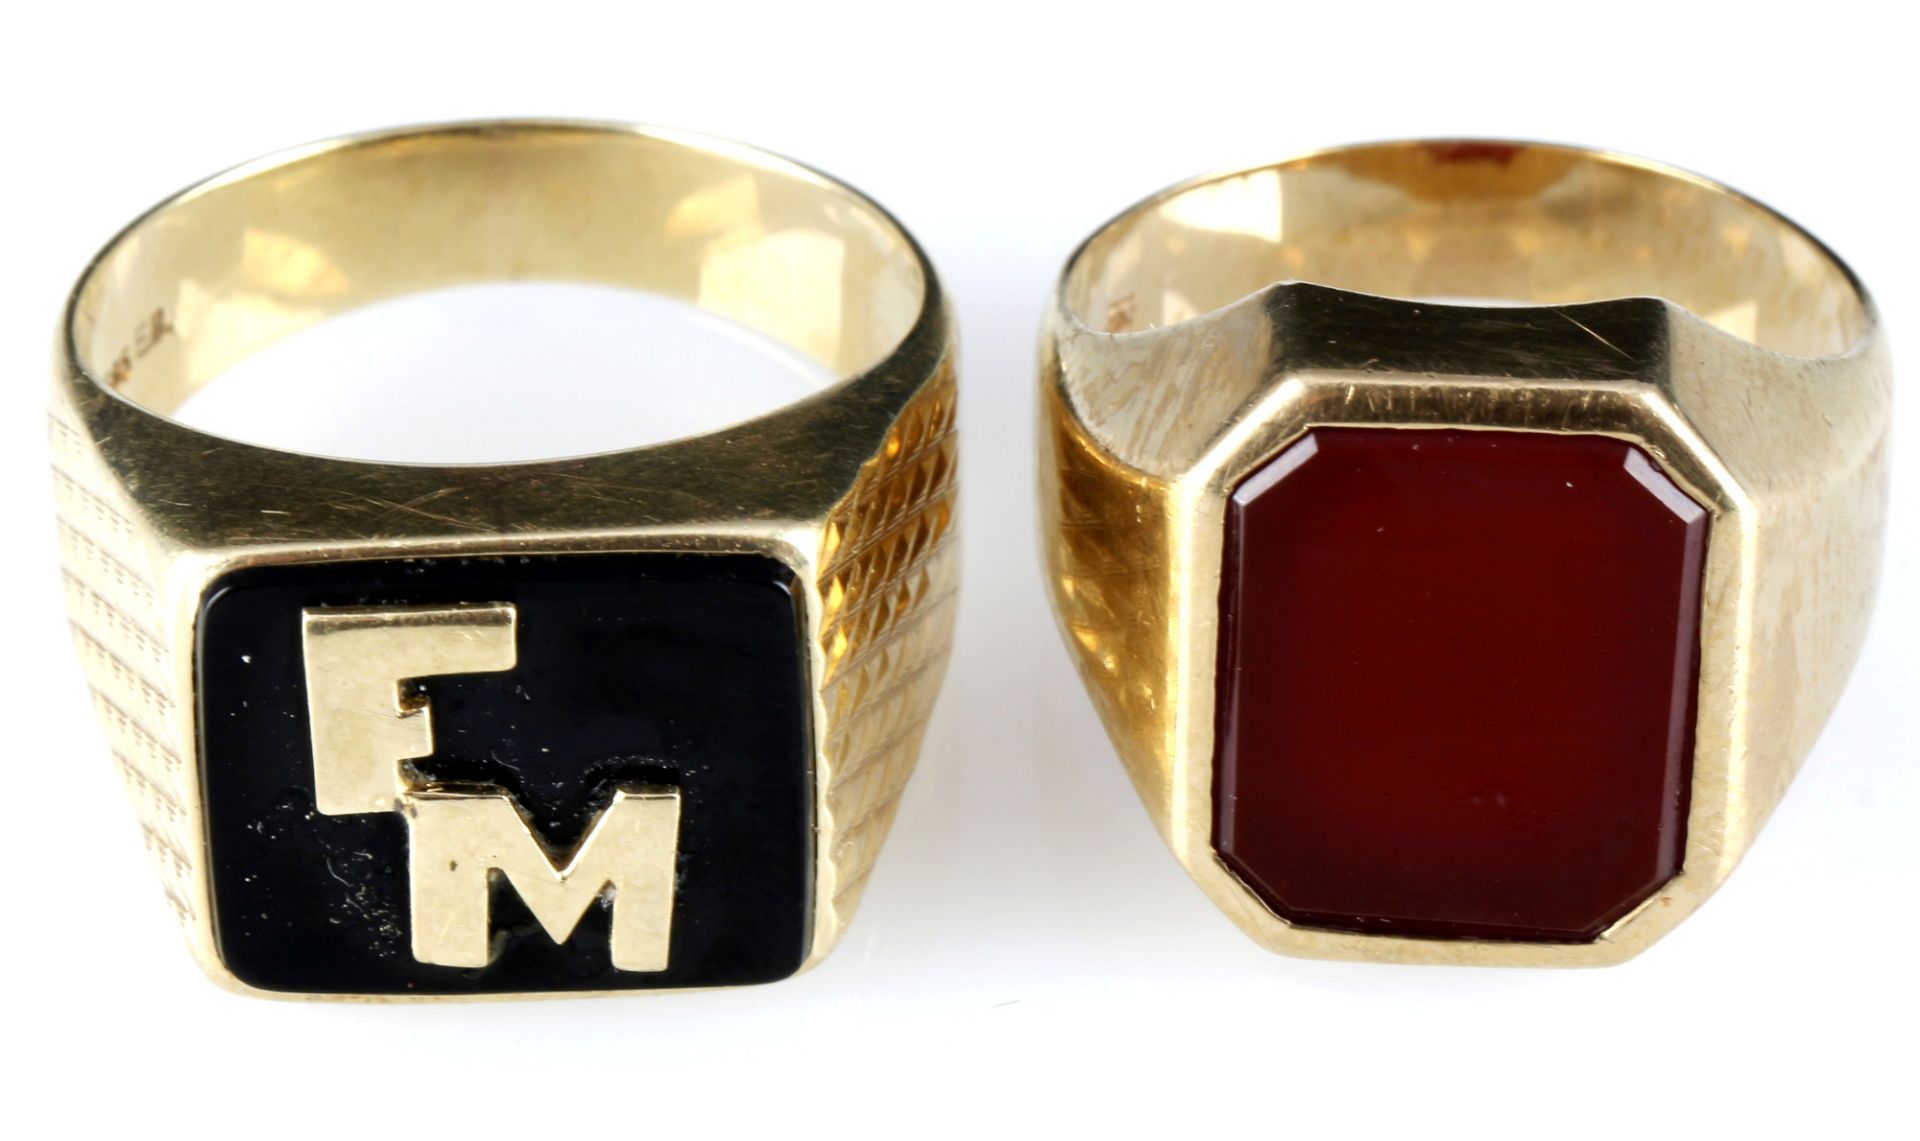 333 - 585 Gold 2 Siegelringe und Manschettenknöpfe, 8K - 14K gold signet rings and cufflinks, - Bild 5 aus 6